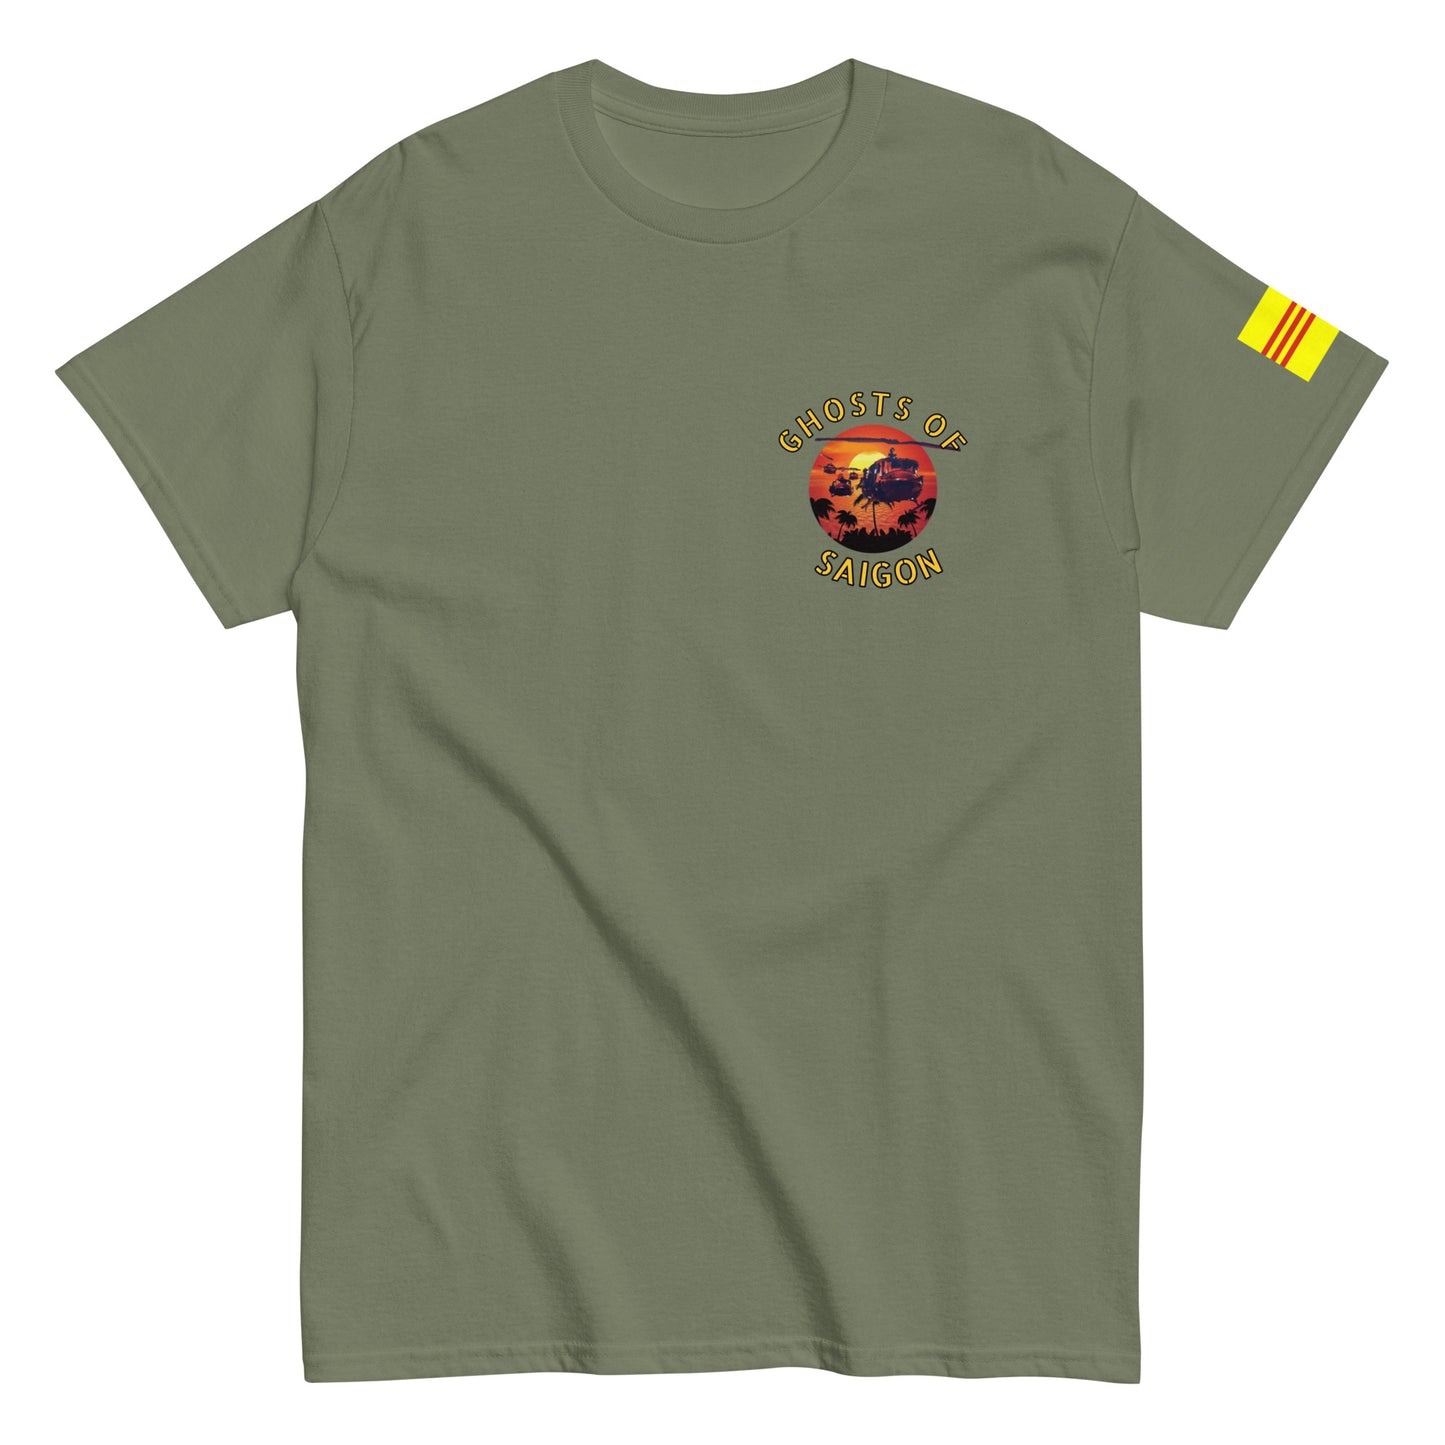 Ghosts of the Battlefield Saigon T-Shirt